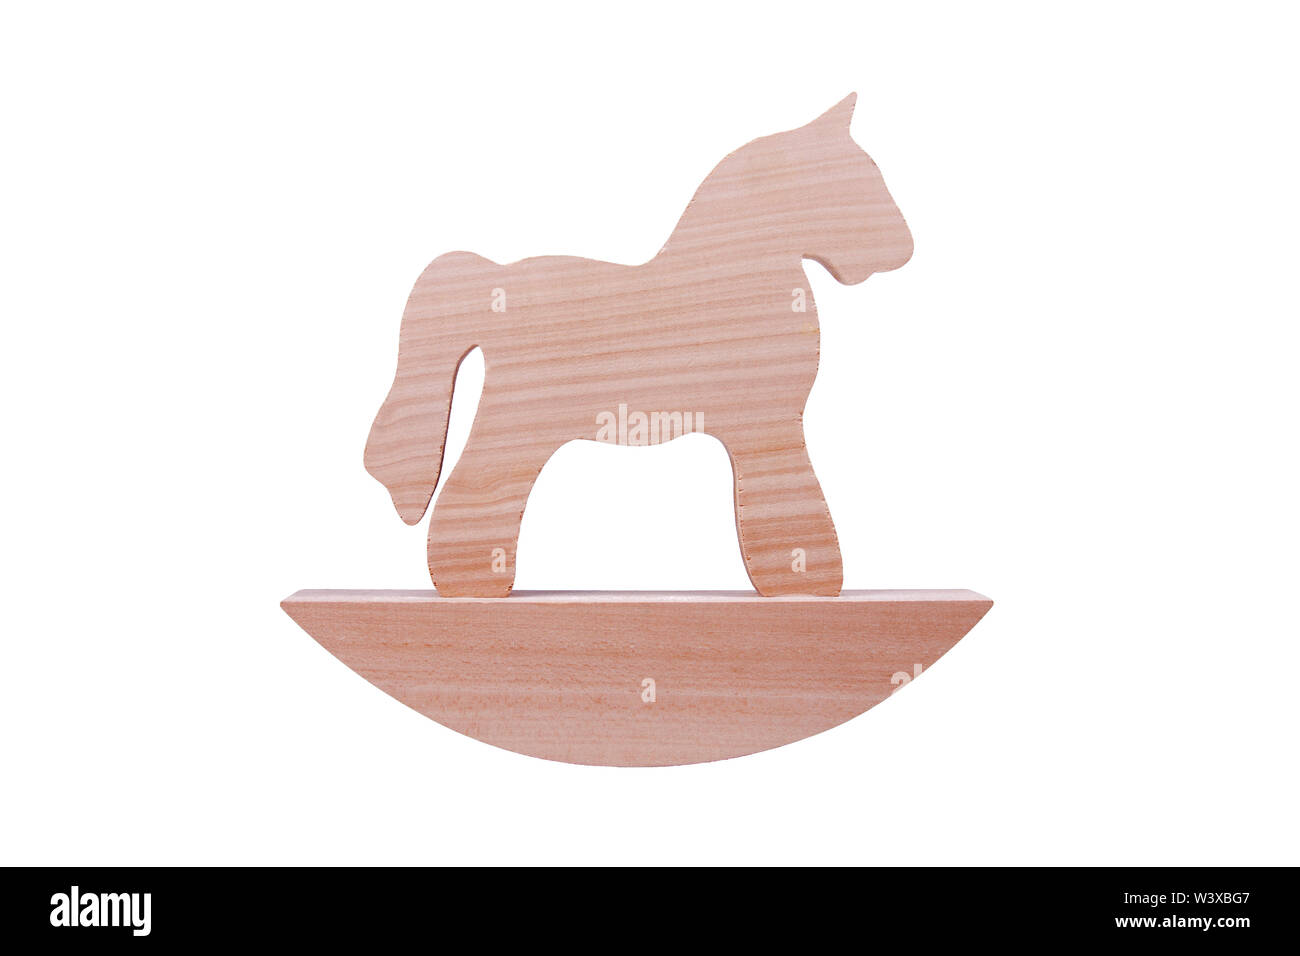 Cheval à bascule en bois simple jouet, cheval figure sur un support isolé sur fond blanc, un cheval de Troie ou des jouets pour enfants concept traditionnel simplifié Banque D'Images